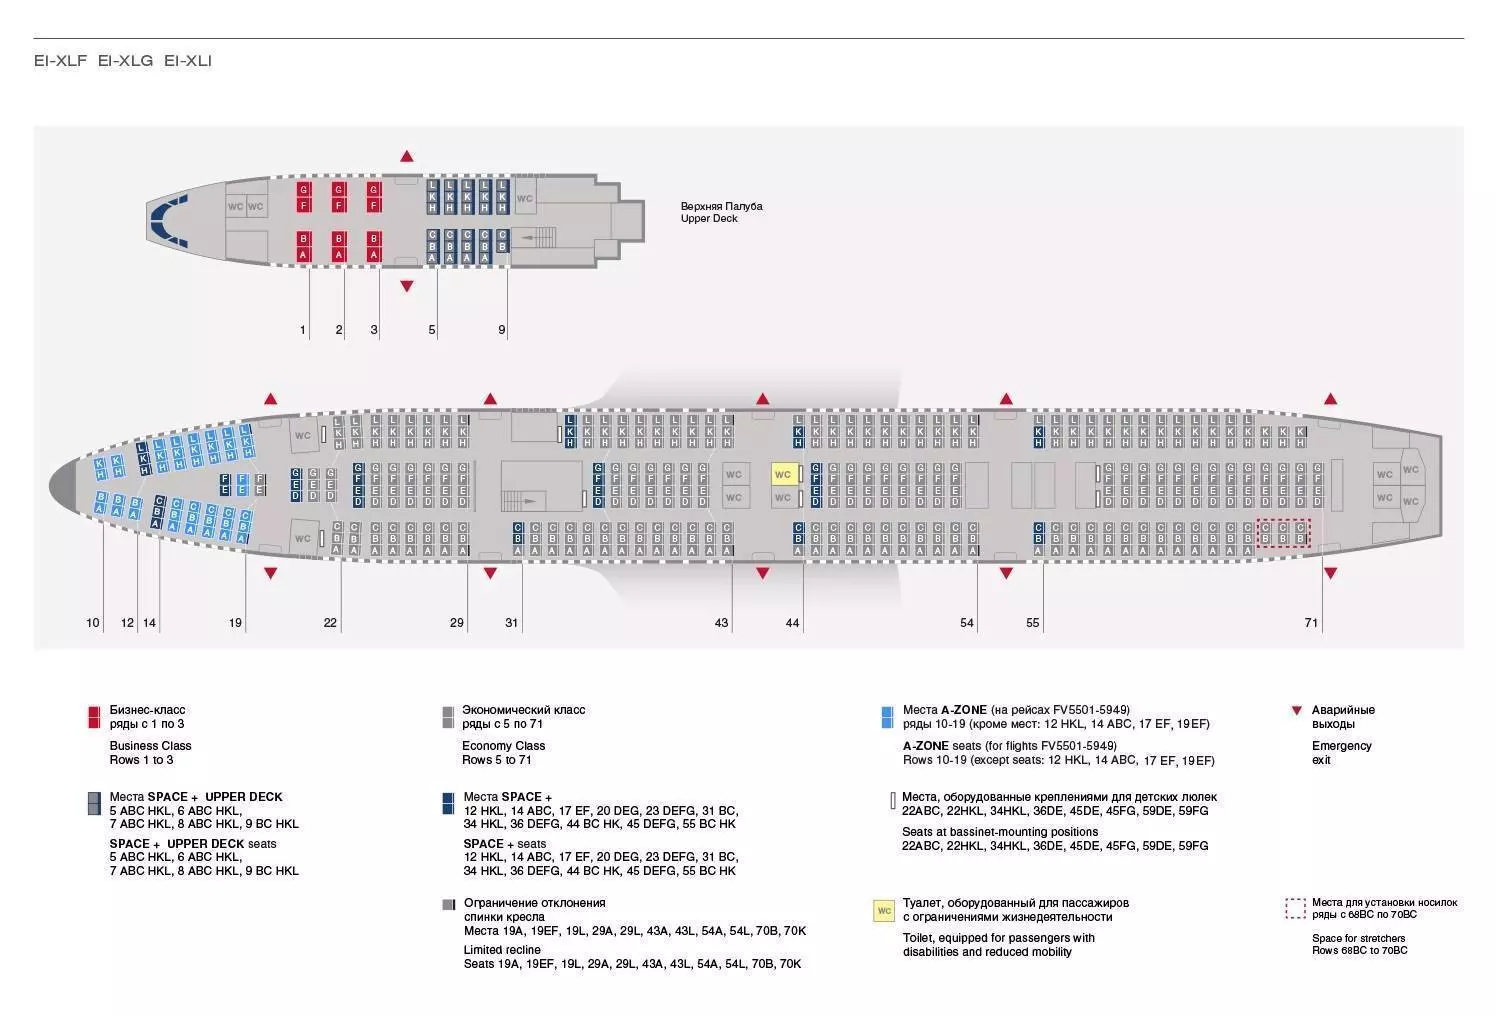 Боинг 737-800: история создания, характеристики, советы по выбору места в салоне